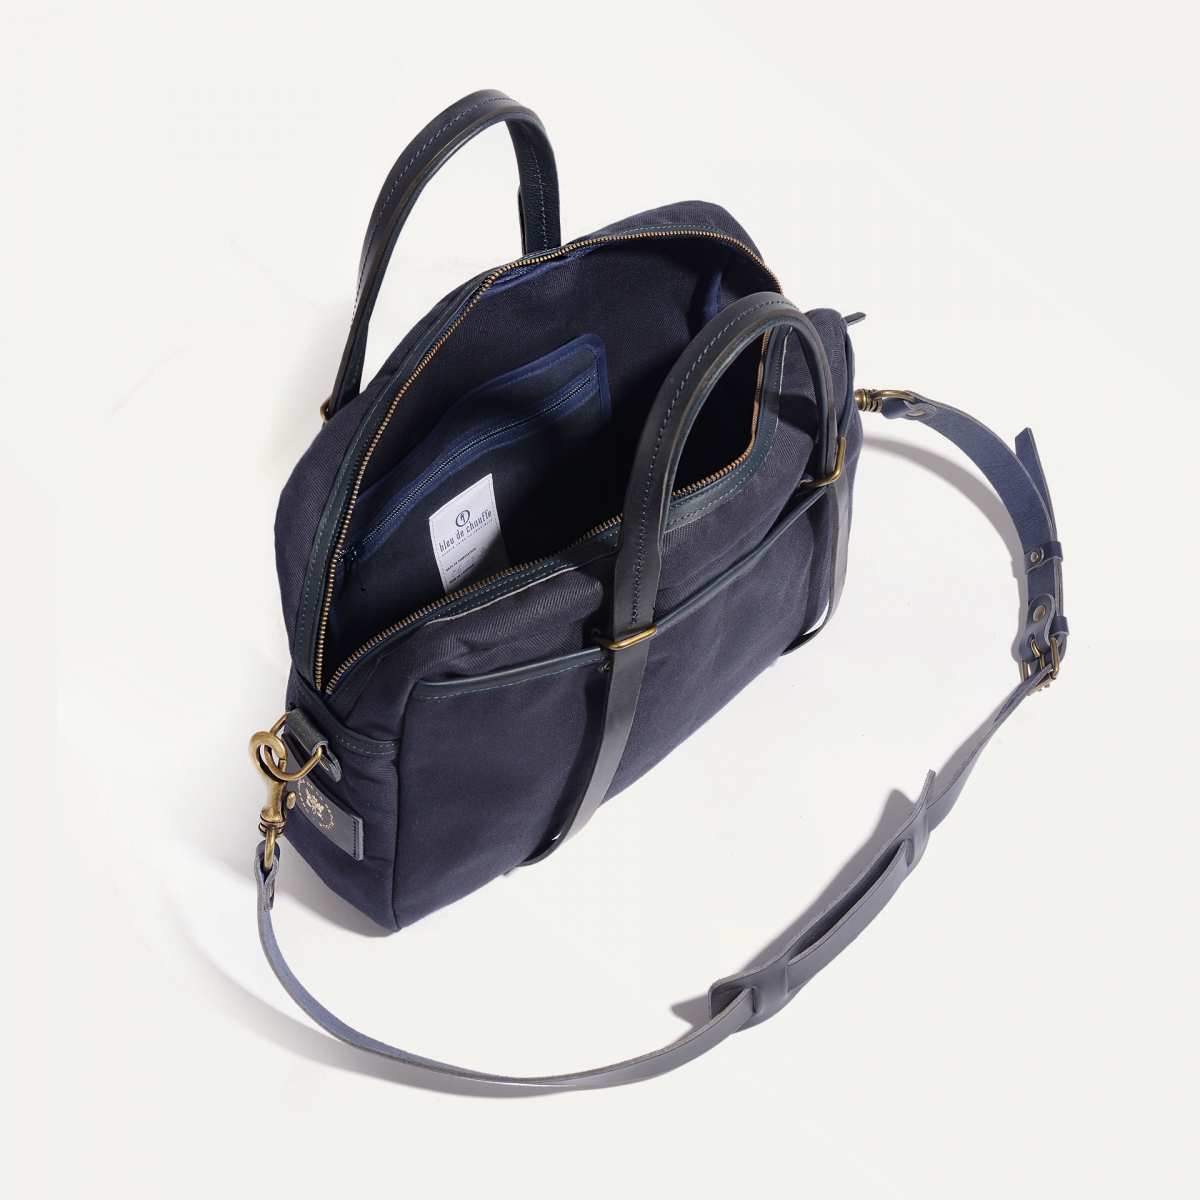 SUMO laptop bag - Bleu de Chauffe x Élysée / Navy Blue (image n°4)